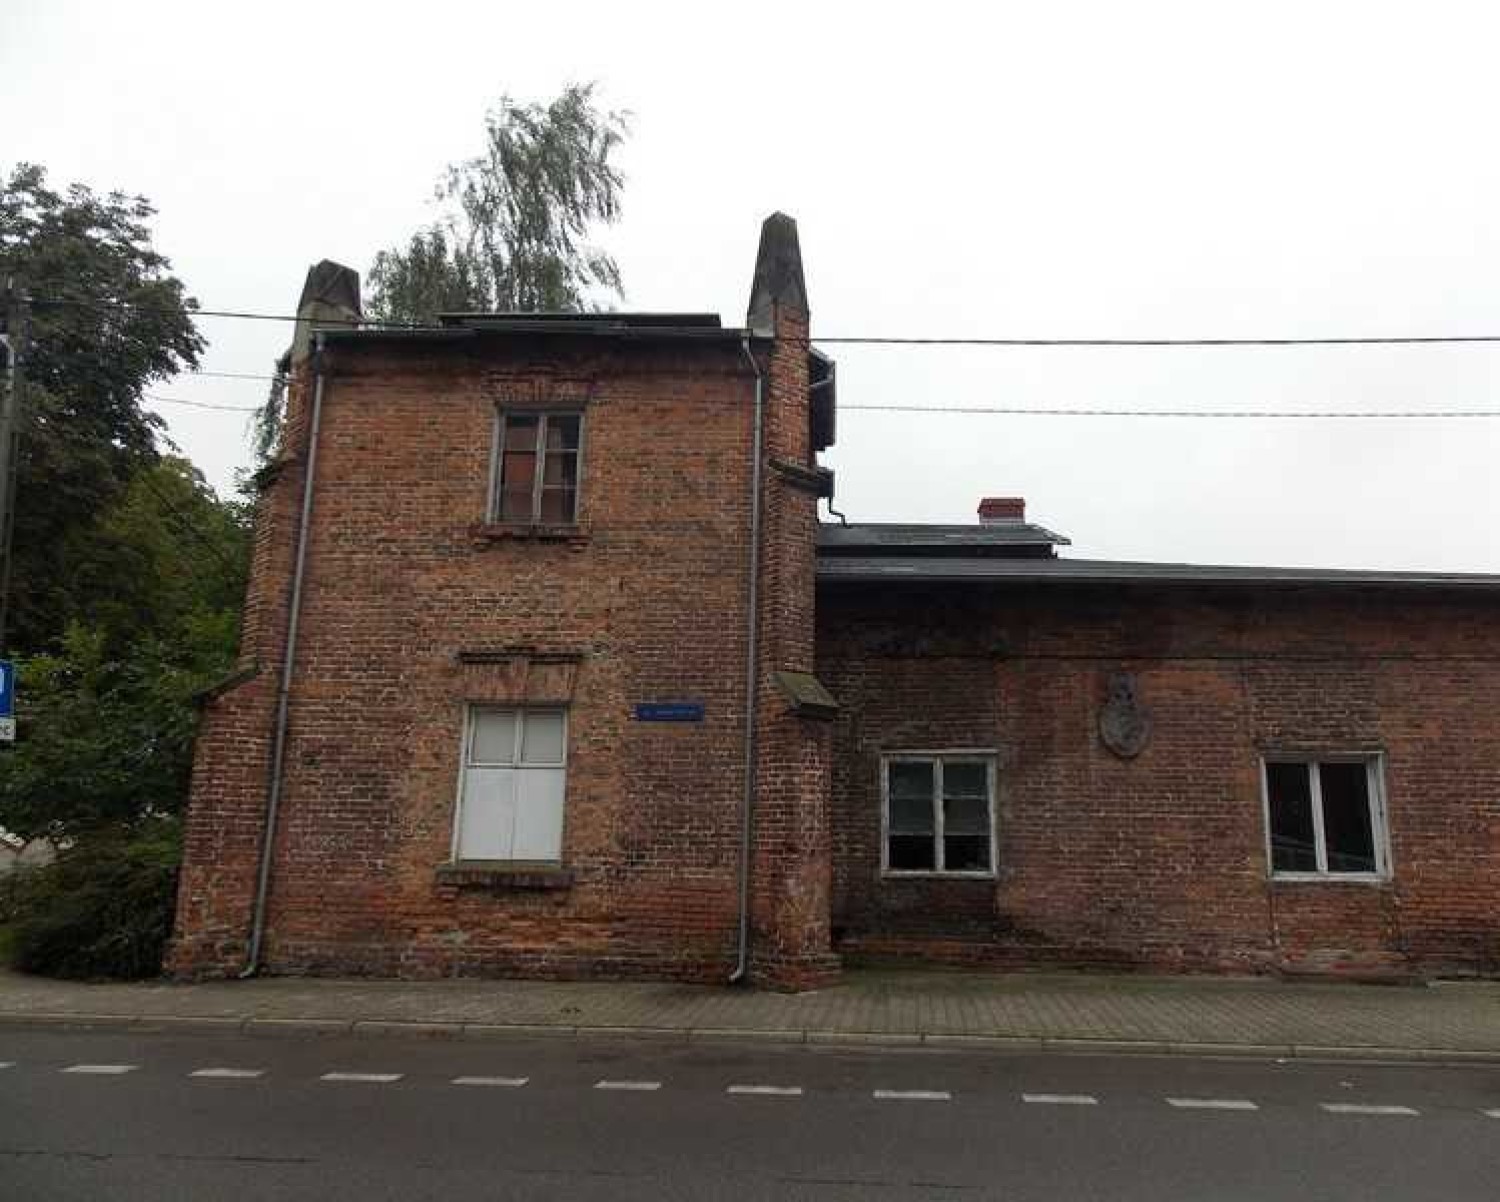 Rewitalizacja domku gotyckiego w Opatówku. Remont potrwa do września